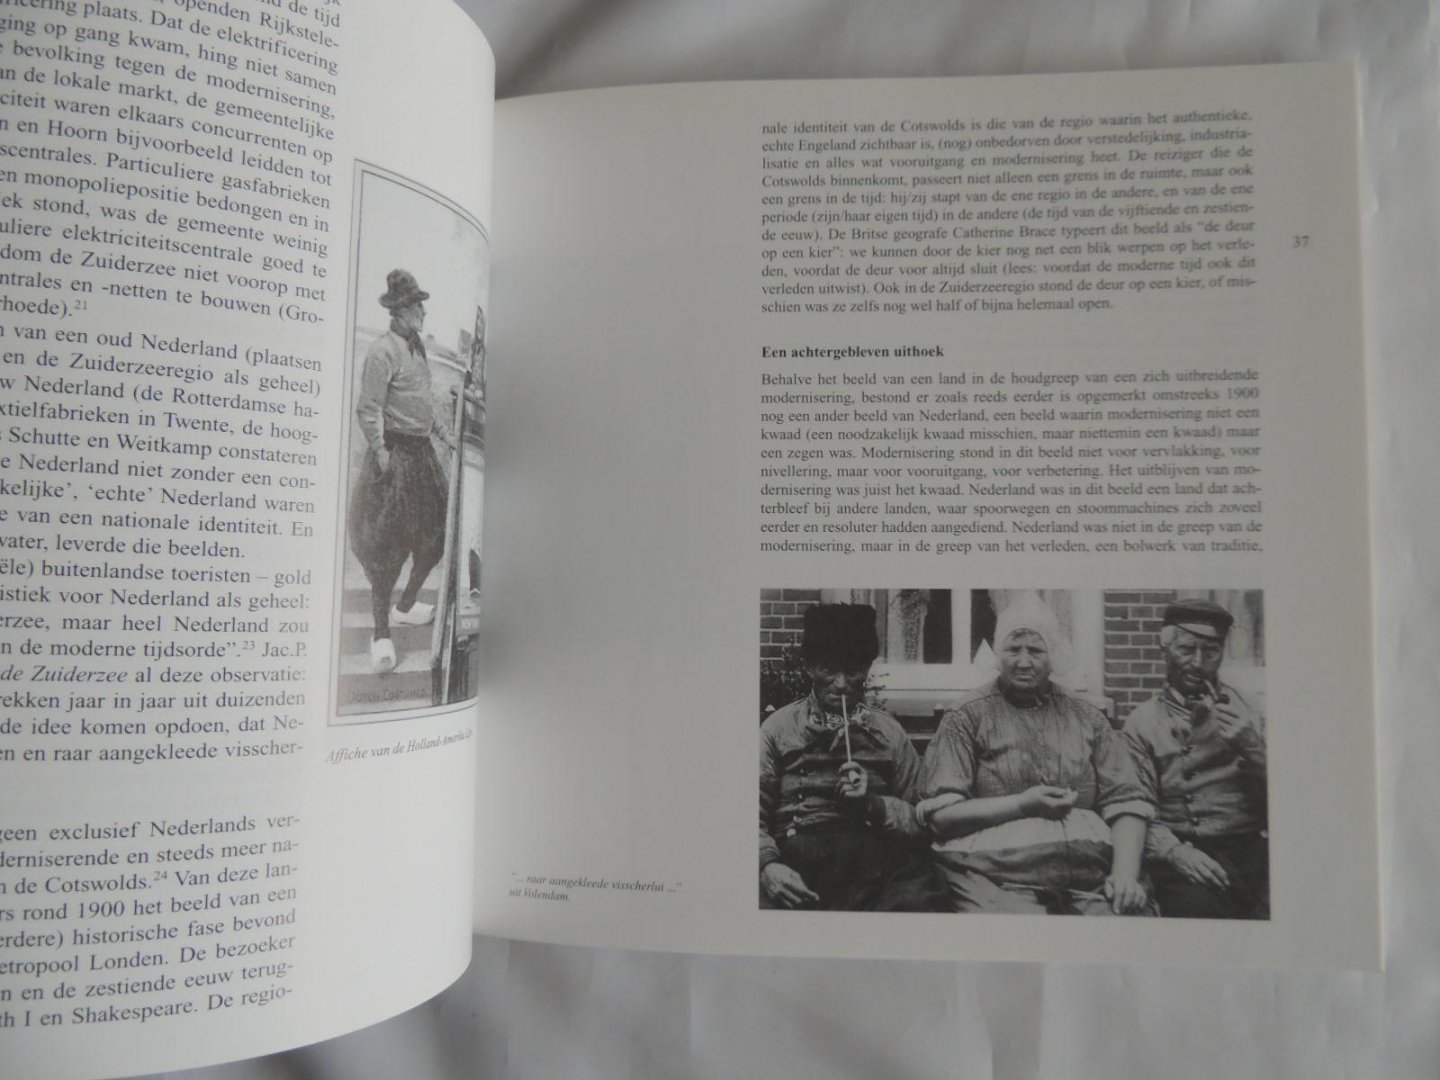 andre geurts a.j. /// van doesburg  /// van der most .///  ea. - Cultuur historisch jaarboek voor Flevoland 2001.  Een verleden voor de toekomst